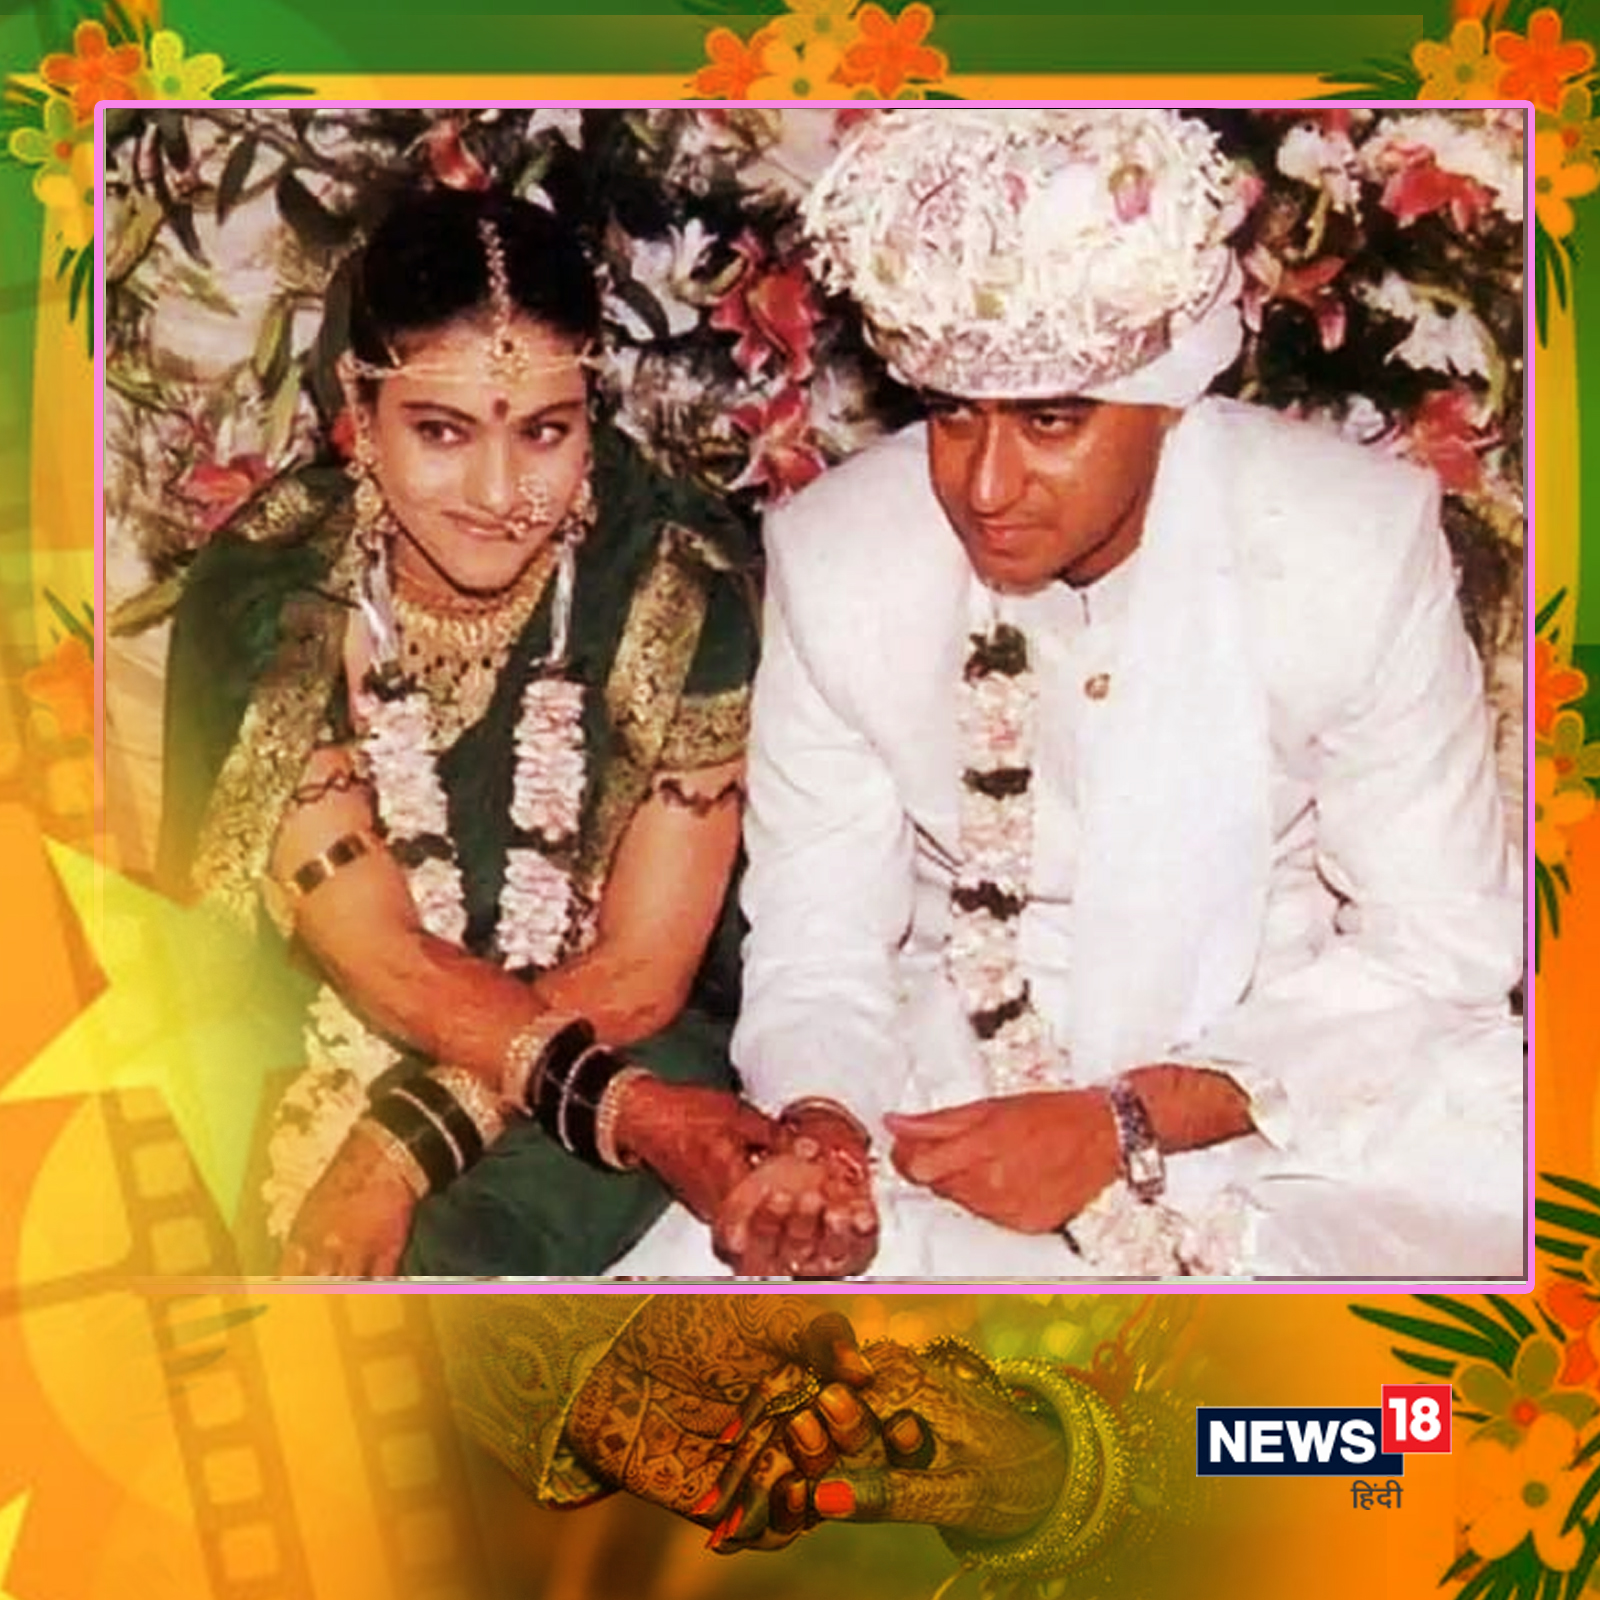  बॉलीवुड एक्टर अजय देवगन और काजोल के बीच का प्यार लोगों को आज भी कपल्स गोल्स देता है. साल 1999 में दोनों ने शादी की थी. इसी साल दोनों की शादी को 22 साल पूरे हुए हैं. उनके दो बच्चे हैं- बेटी न्यासा और बेटा युग.